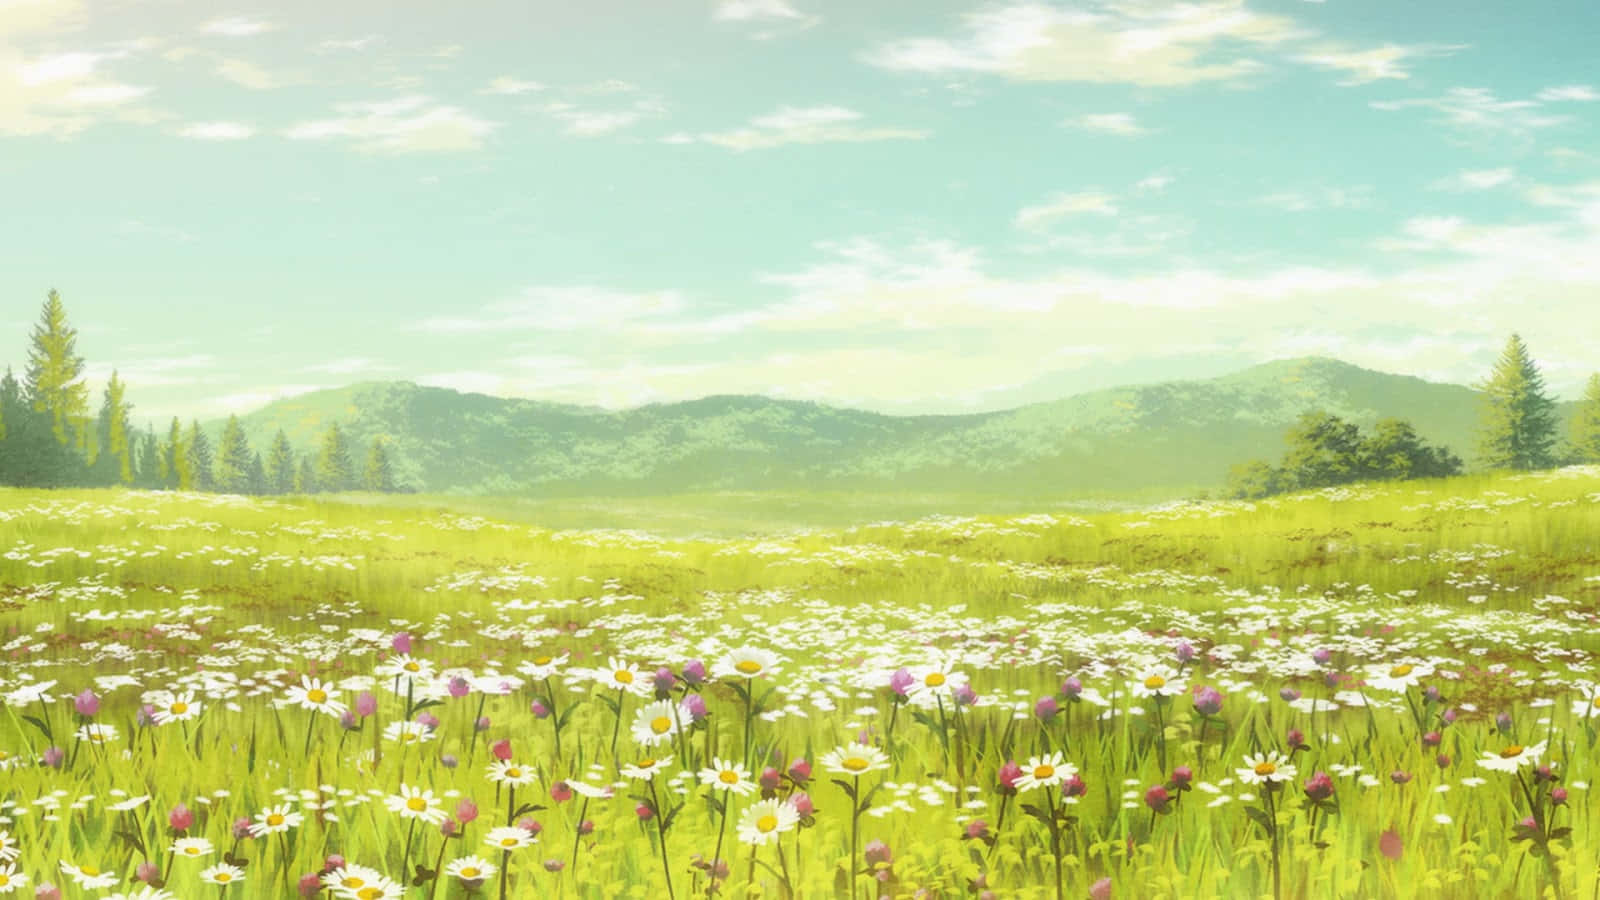 Anime Flower Field Scenery Wallpapers